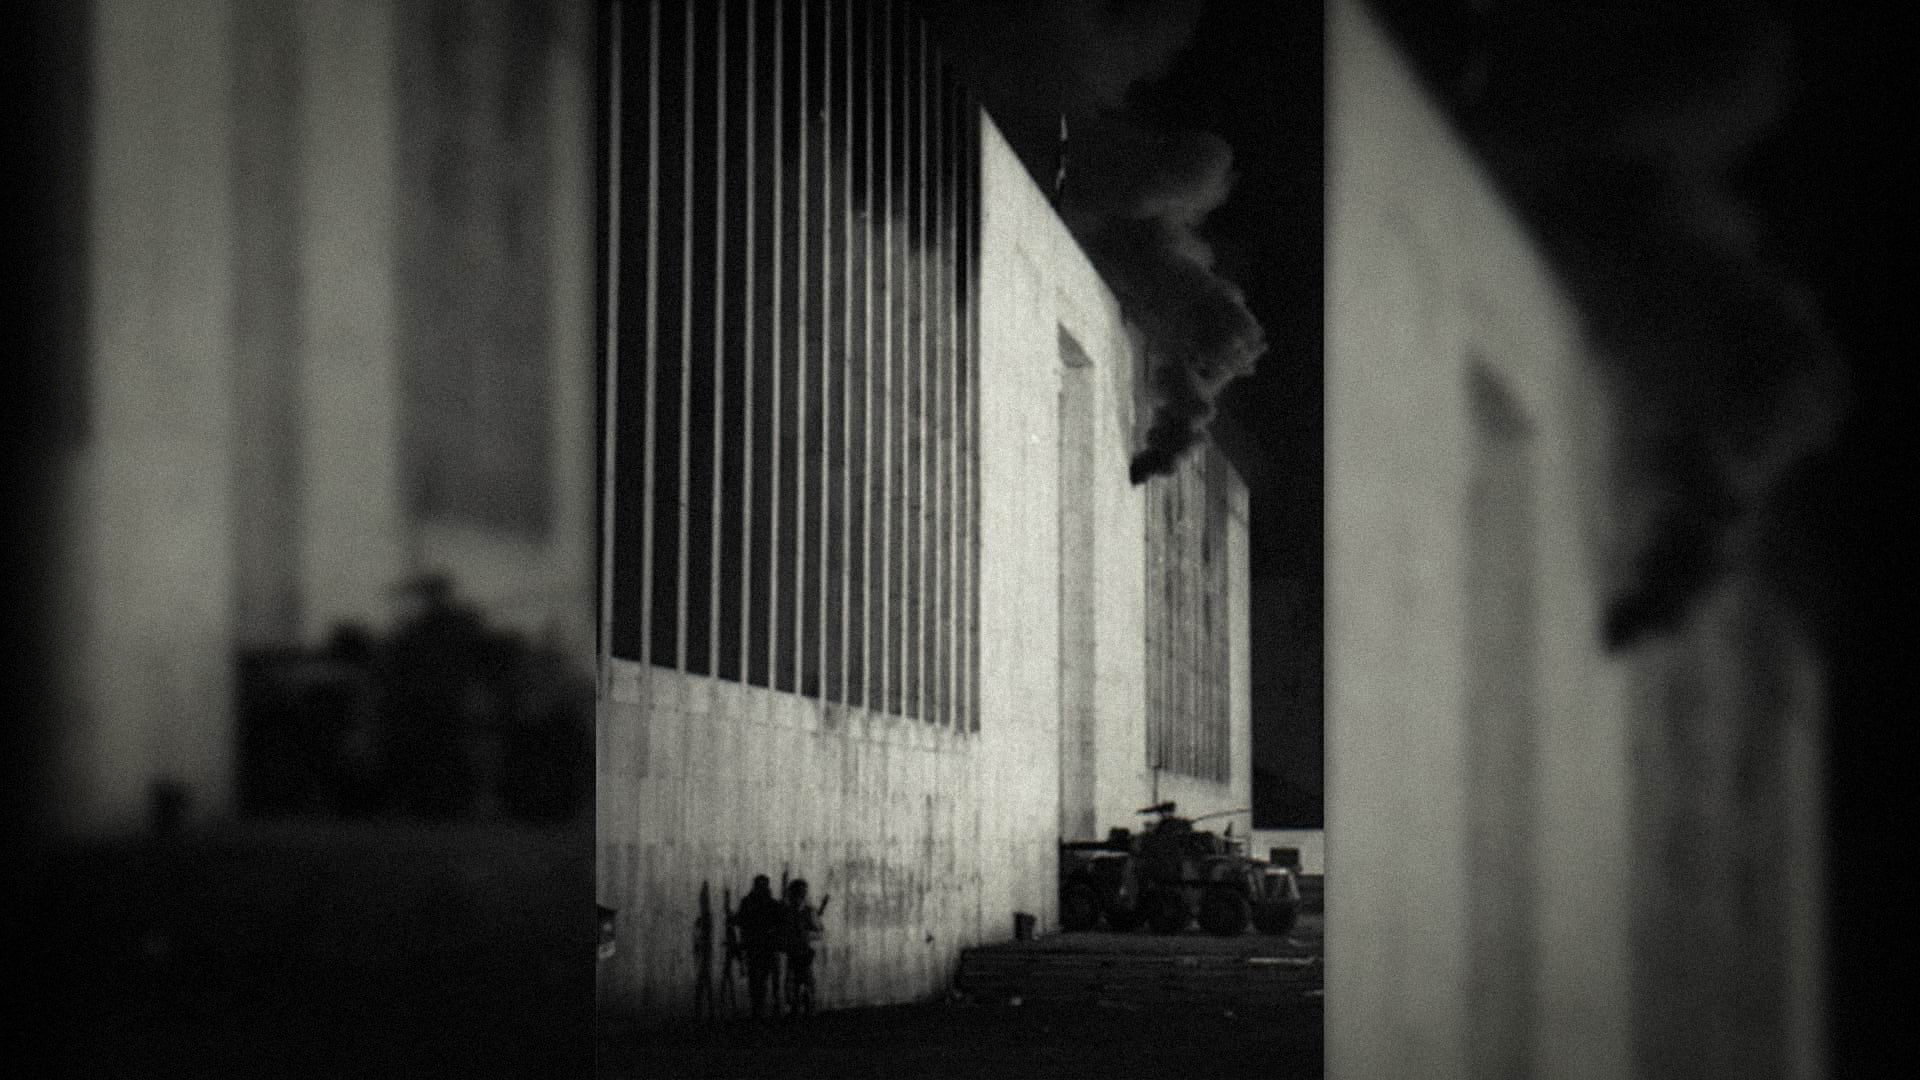 Palacio en llamas, entrada de tanques. De la serie “Palacio de Justicia”